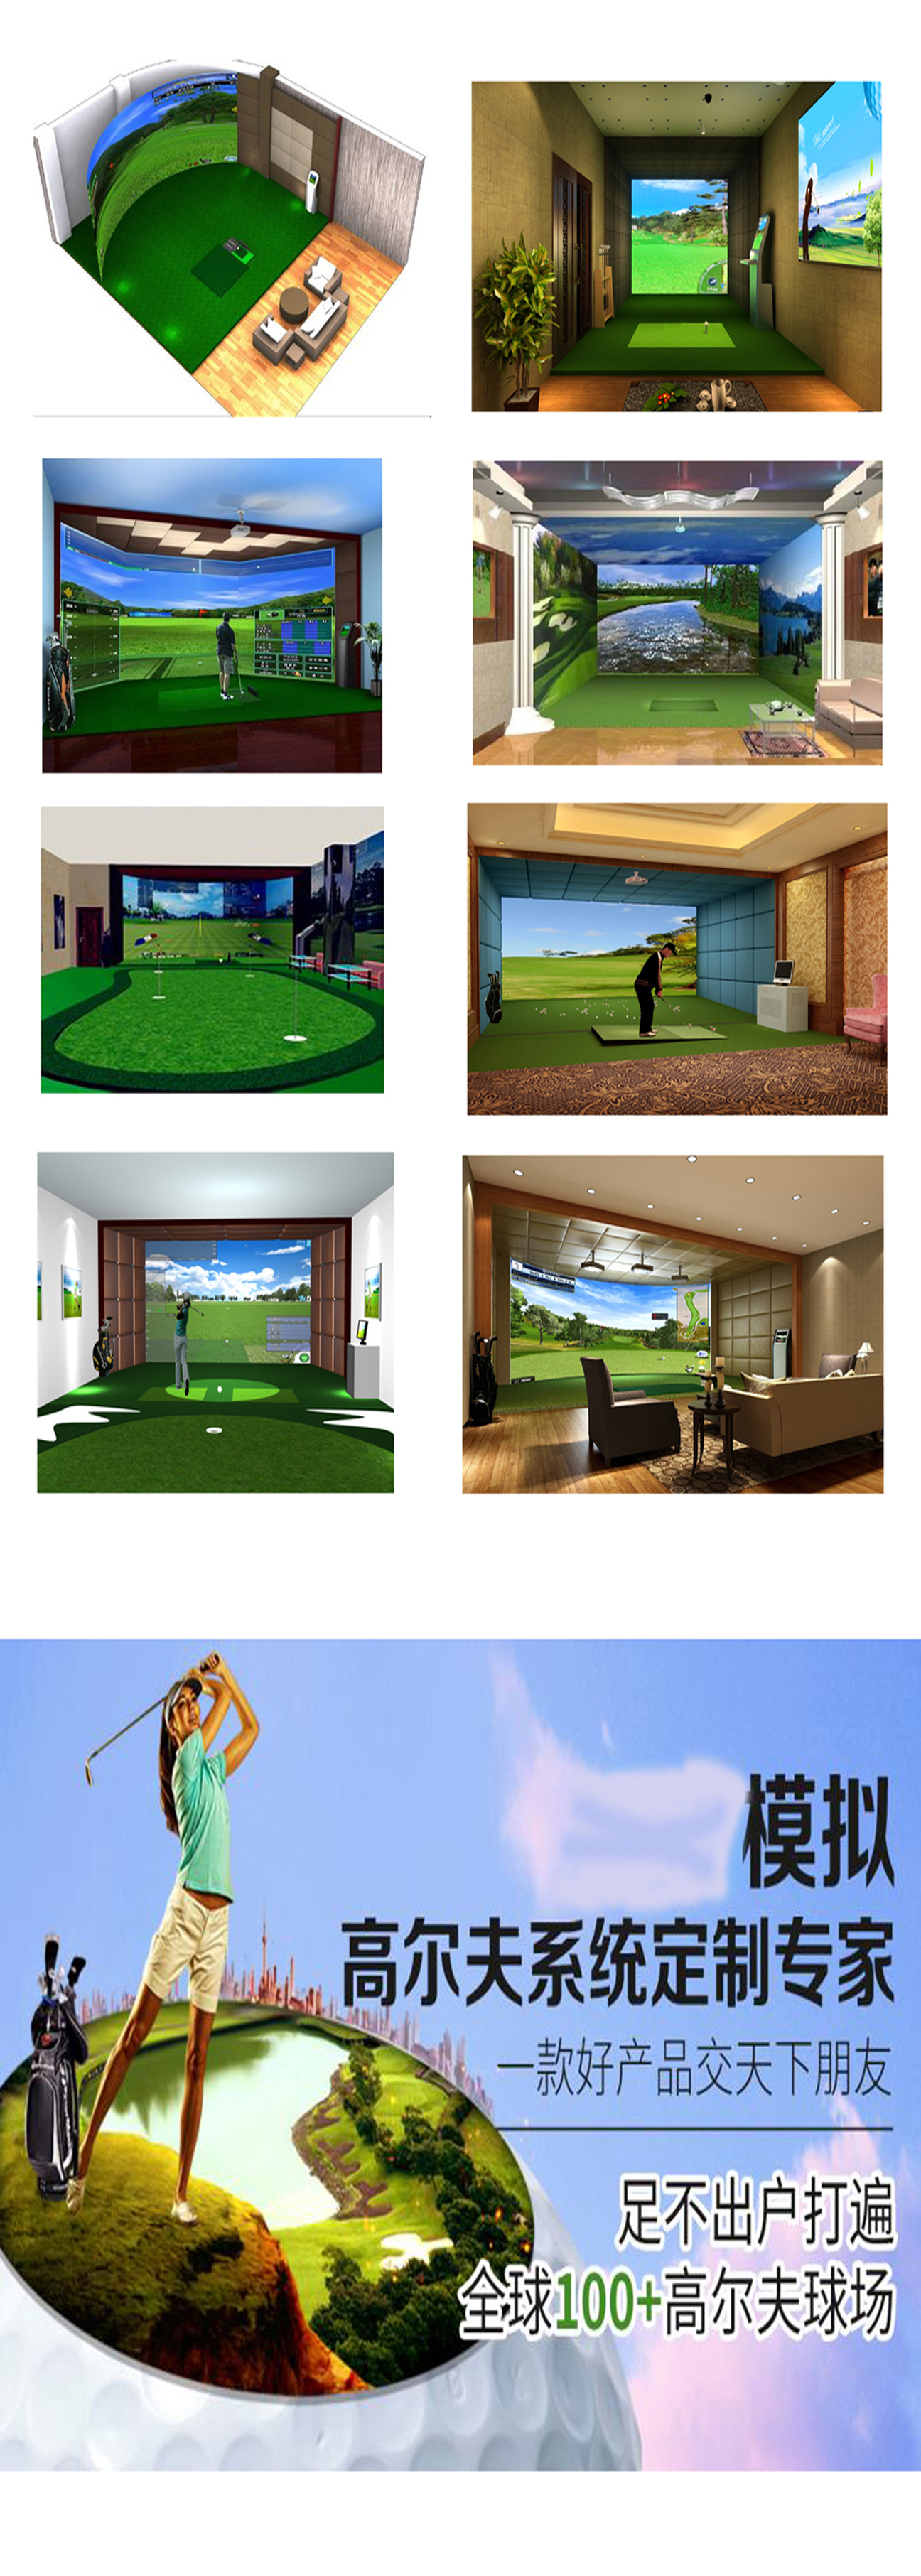 室内模拟高尔夫案例 2.jpg